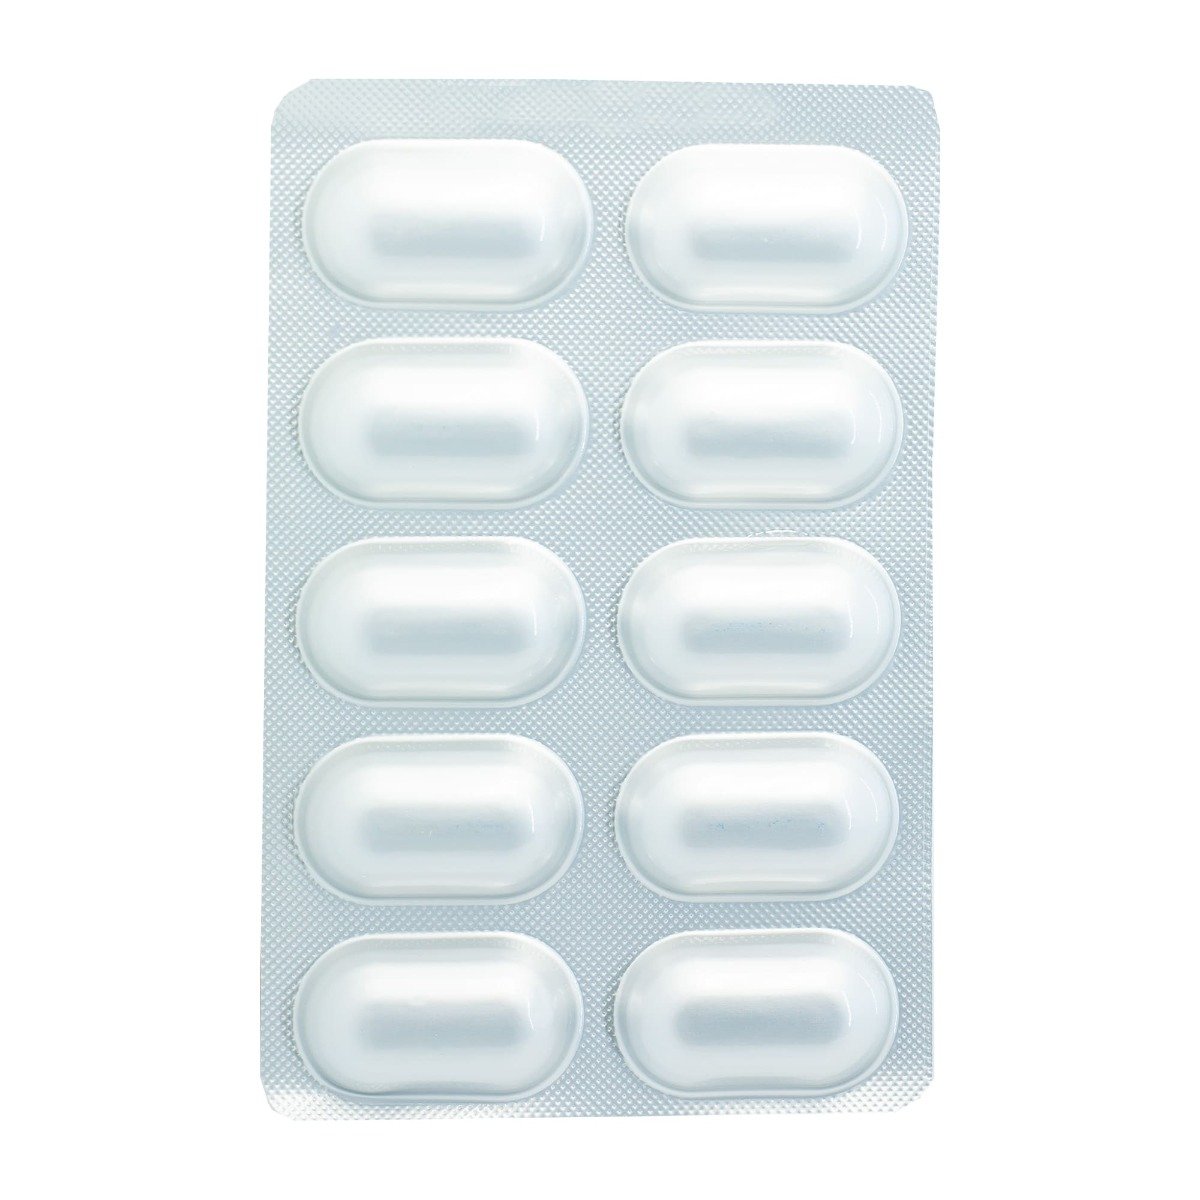 Divakote 500 mg ER - 20 Tablets - Bloom Pharmacy